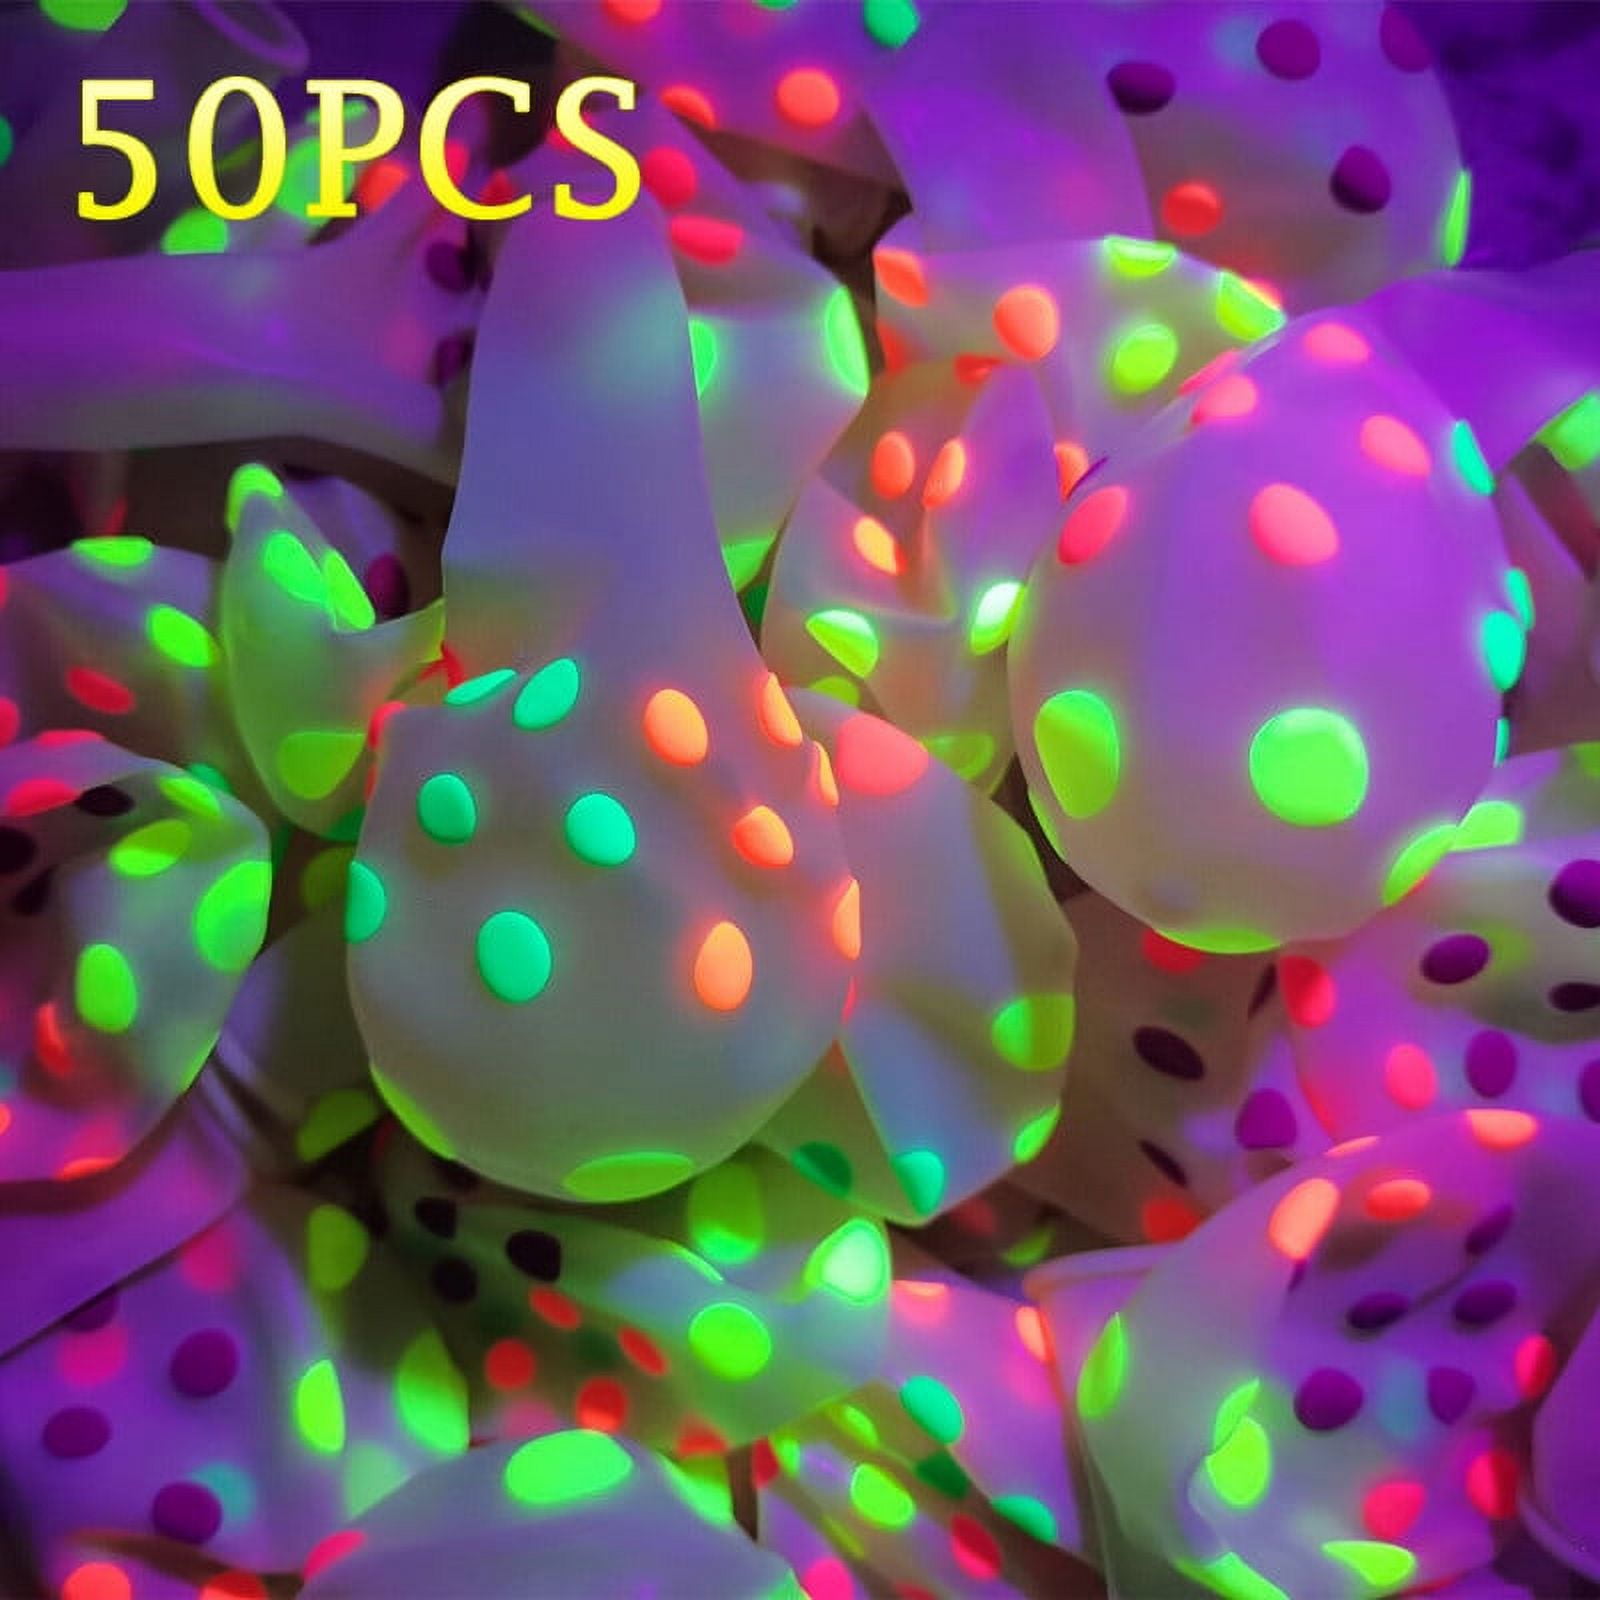 Neon Party Glow Balloons Black Light Party Polka Dot Balloons Luminous  Globos Glow Birthday Party Wedding Decor Supplies